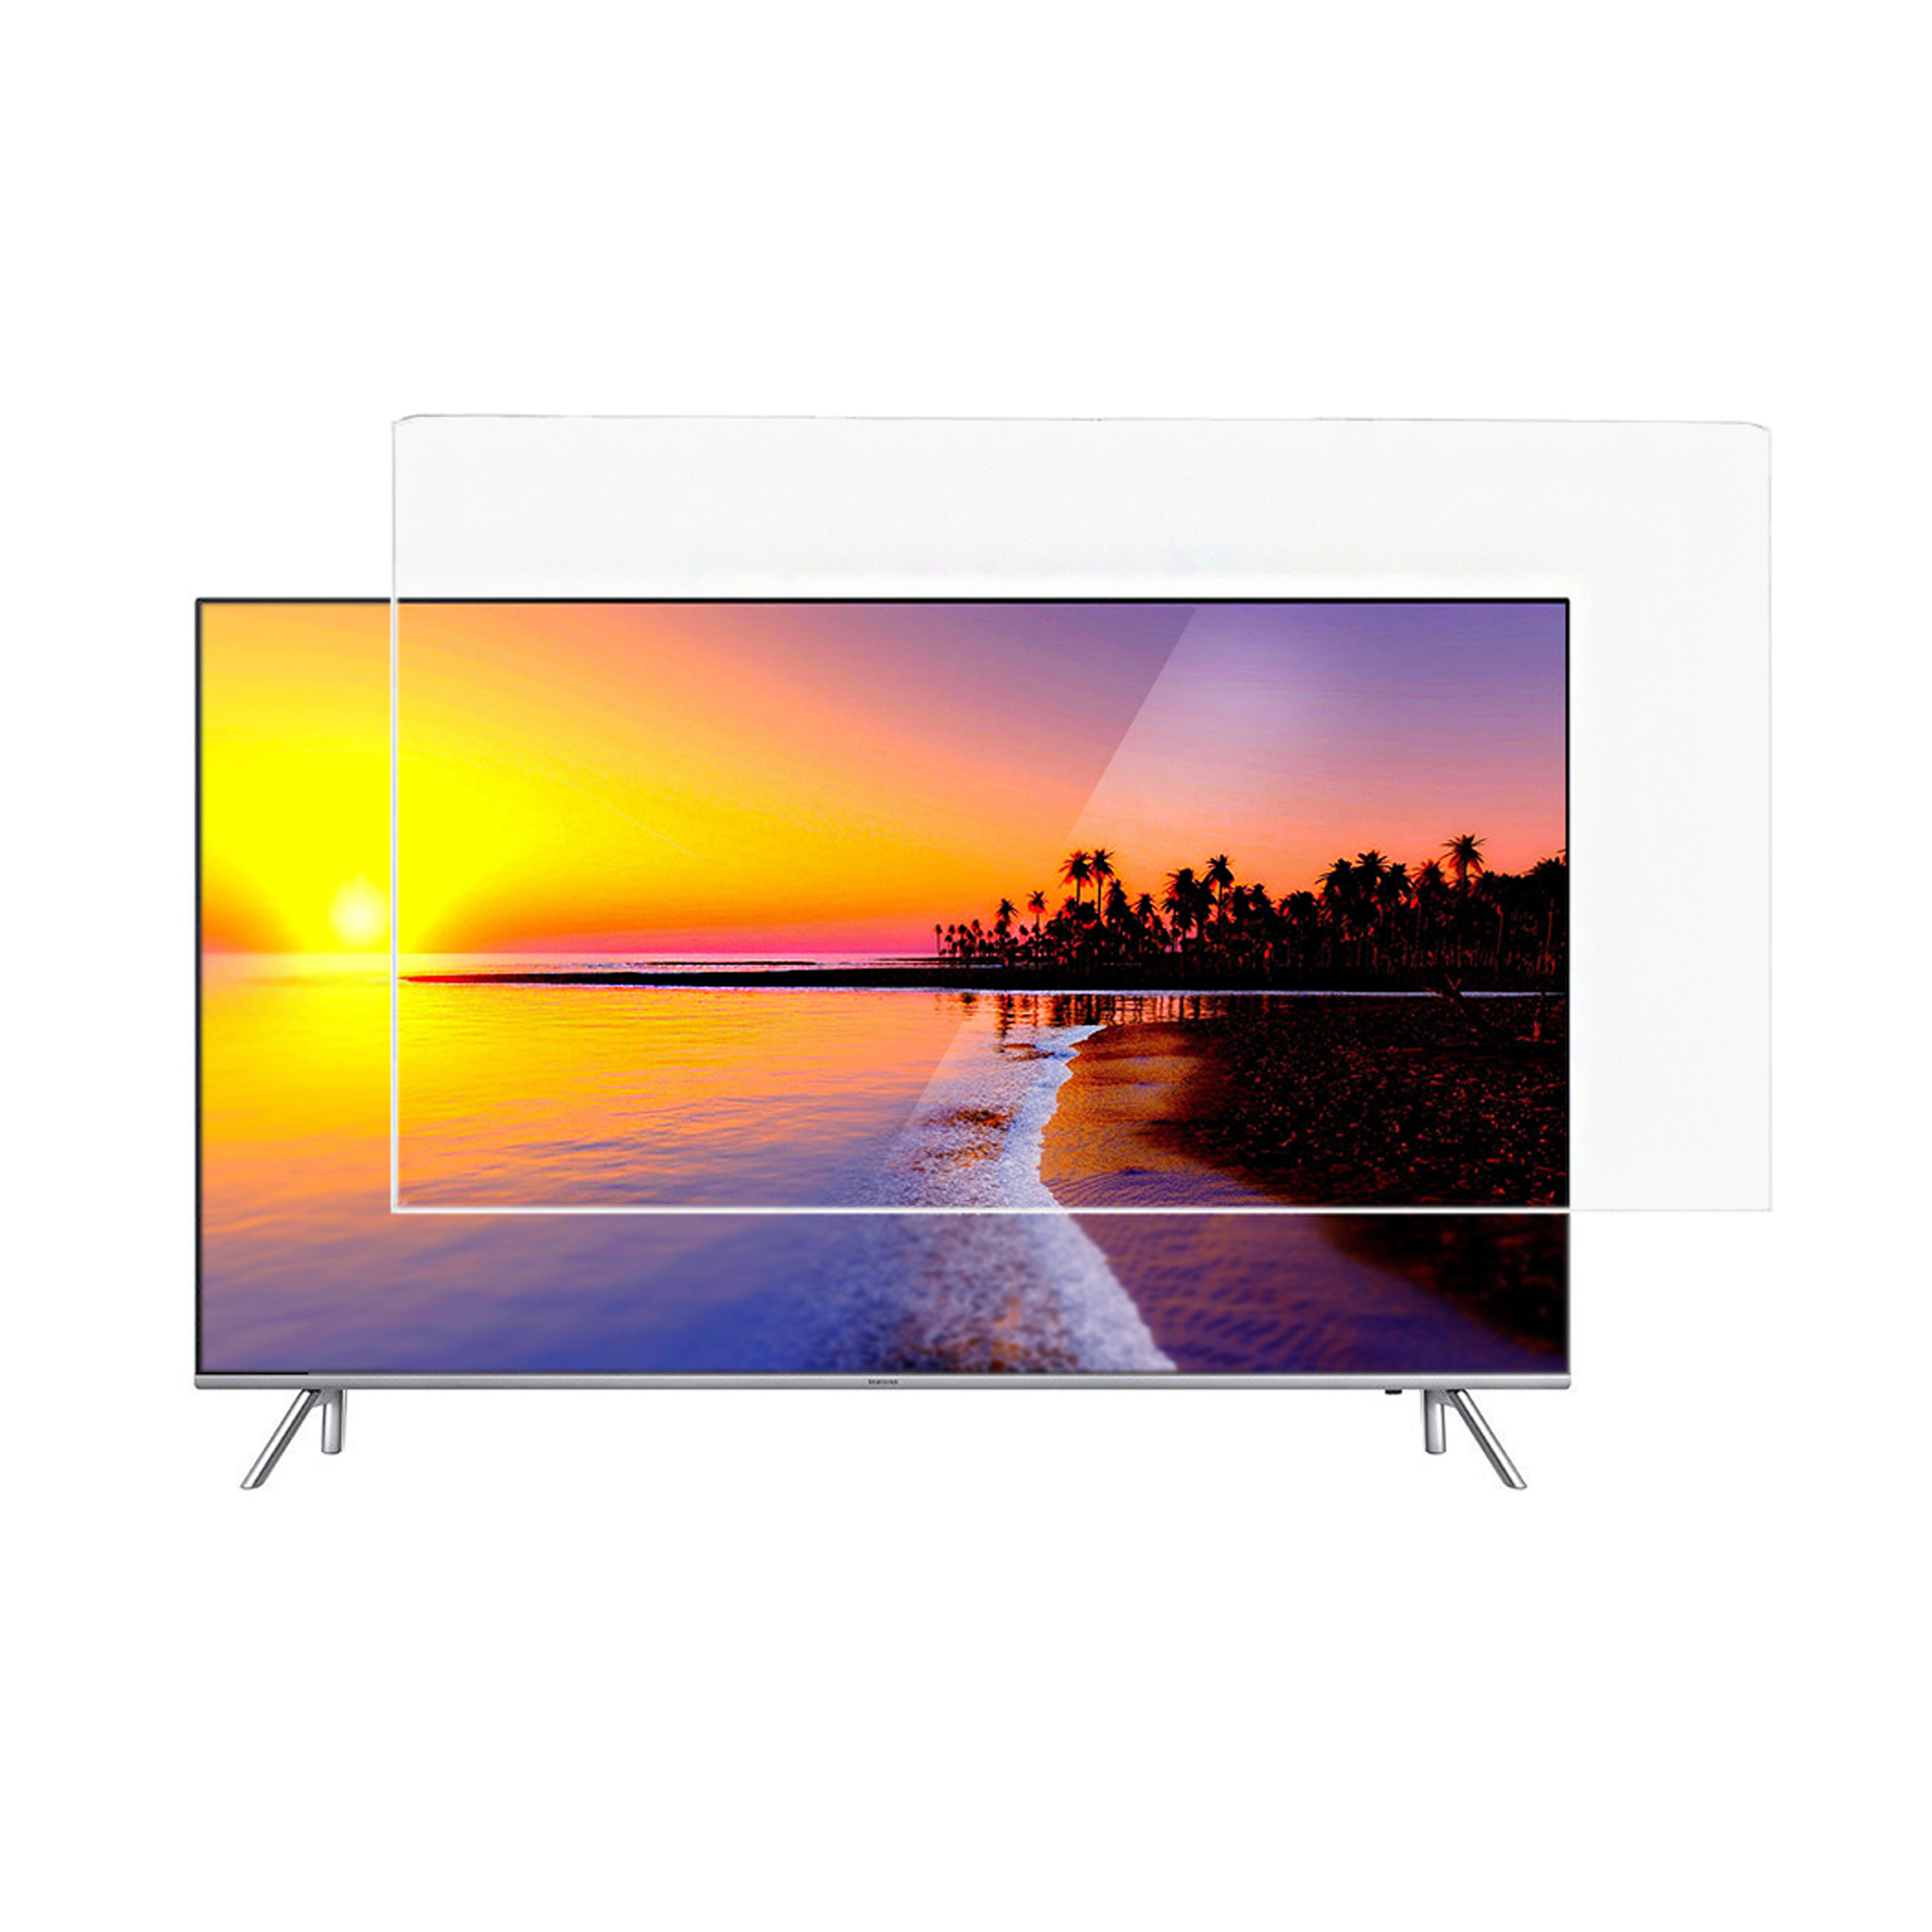 محافظ صفحه تلویزیون کاردو مدل C55 مناسب برای تلویزیون 55 اینچ